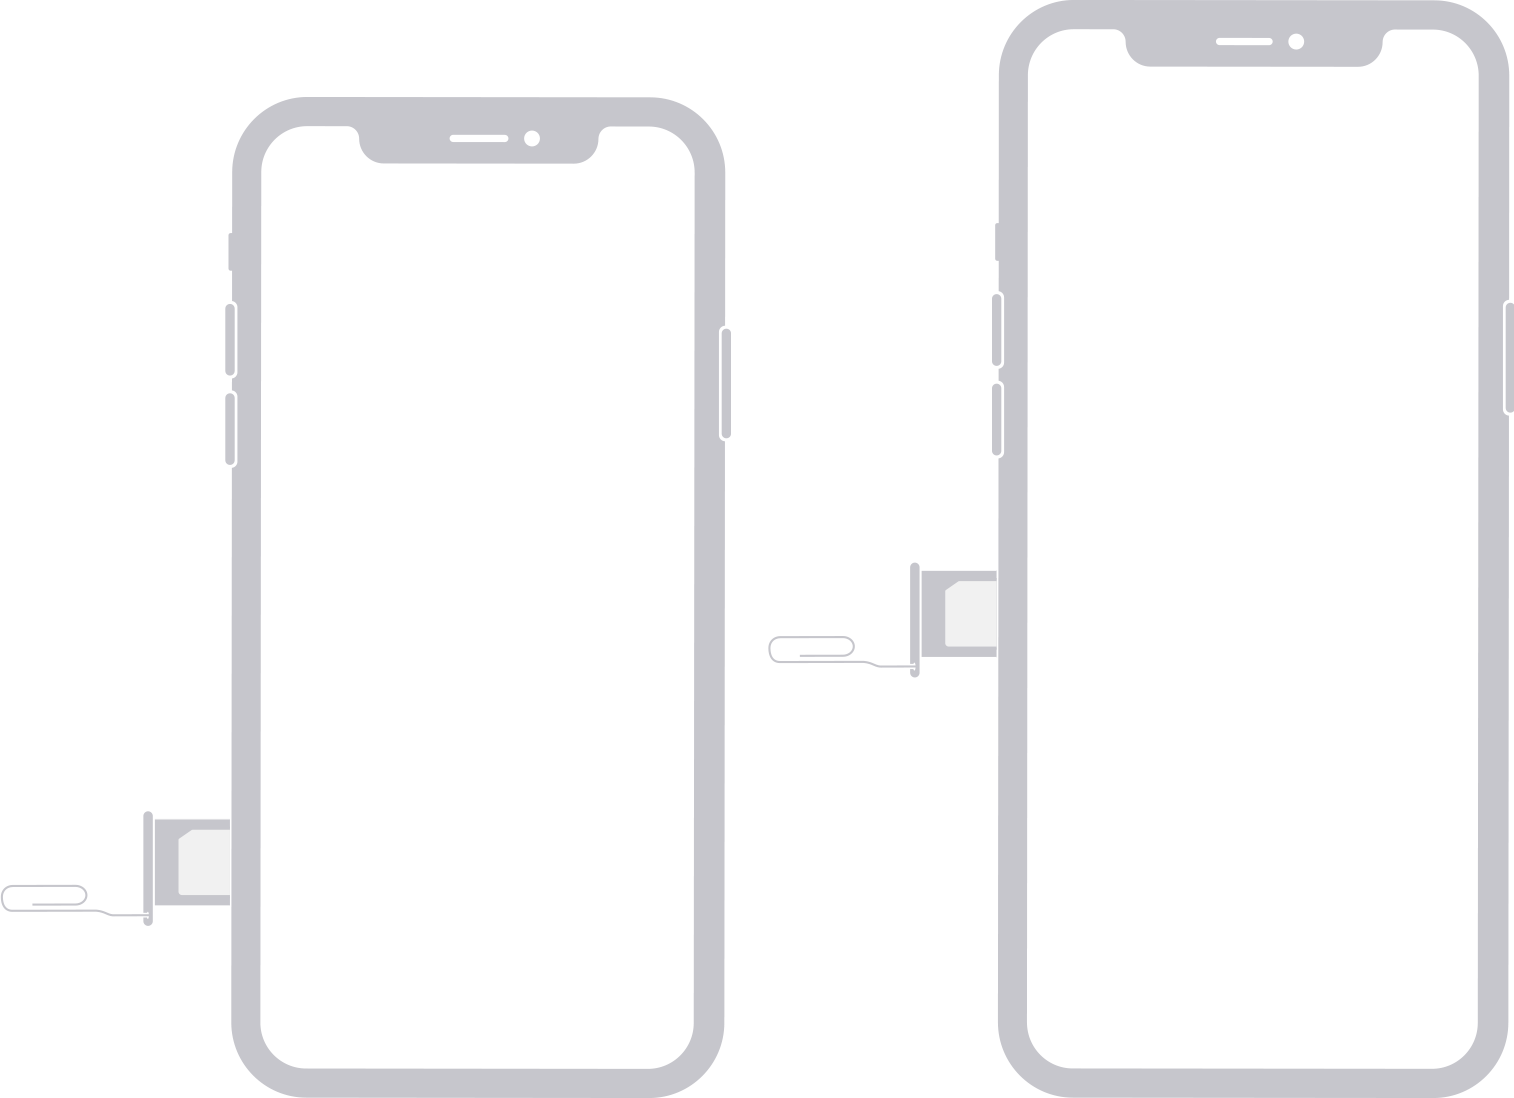 Bild zeigt SIM-Karte auf der linken Seite des iPhone